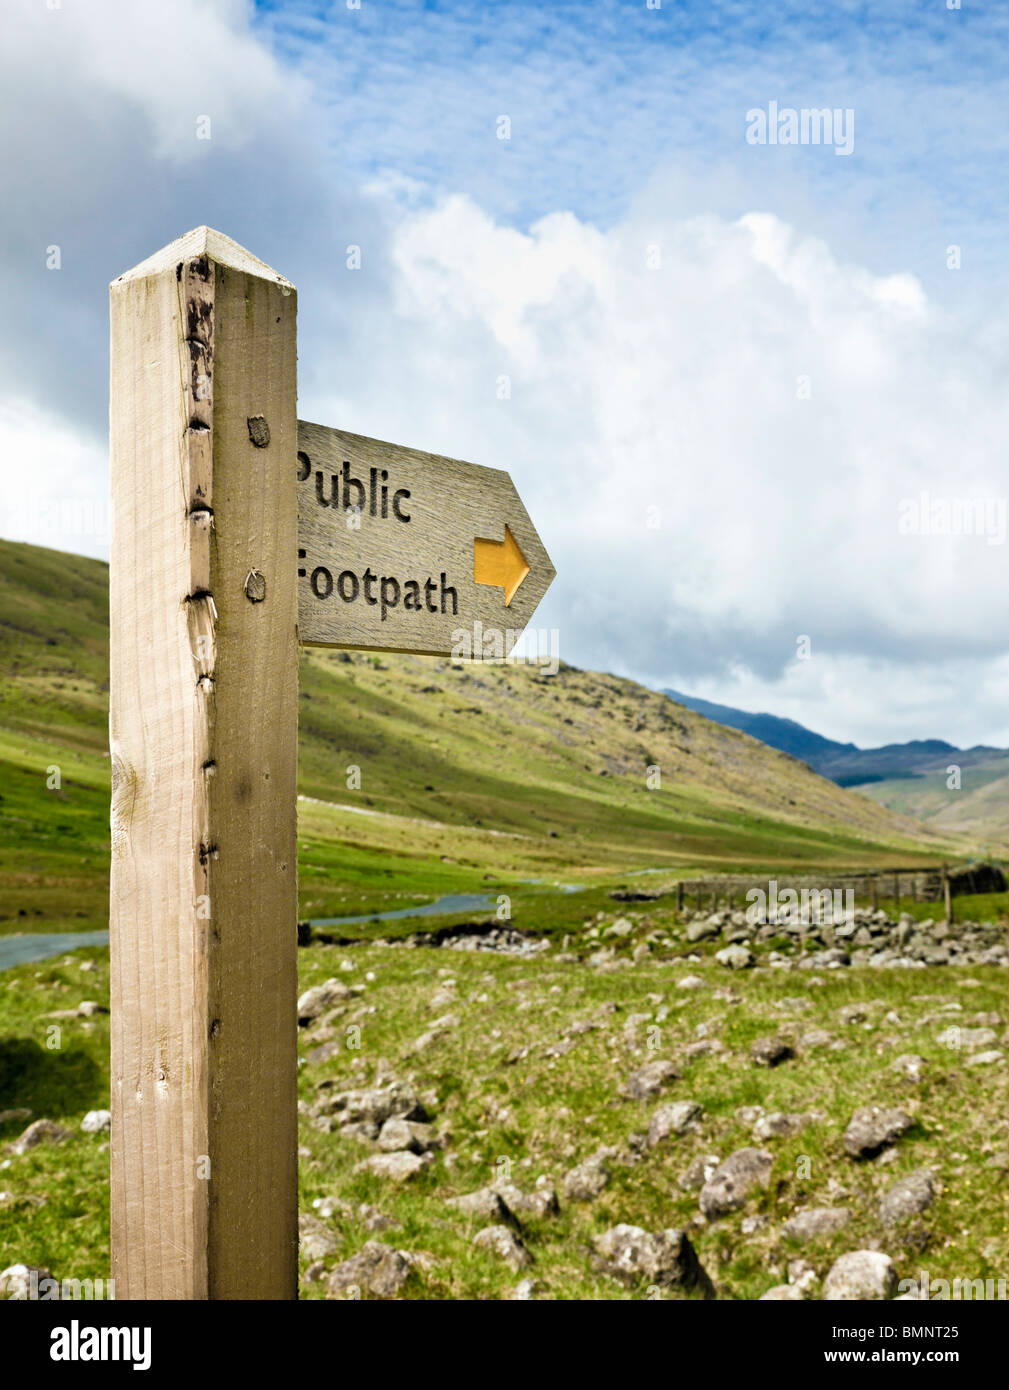 Sendero público cartel de madera en un remoto valle en el Lake District, Inglaterra Foto de stock